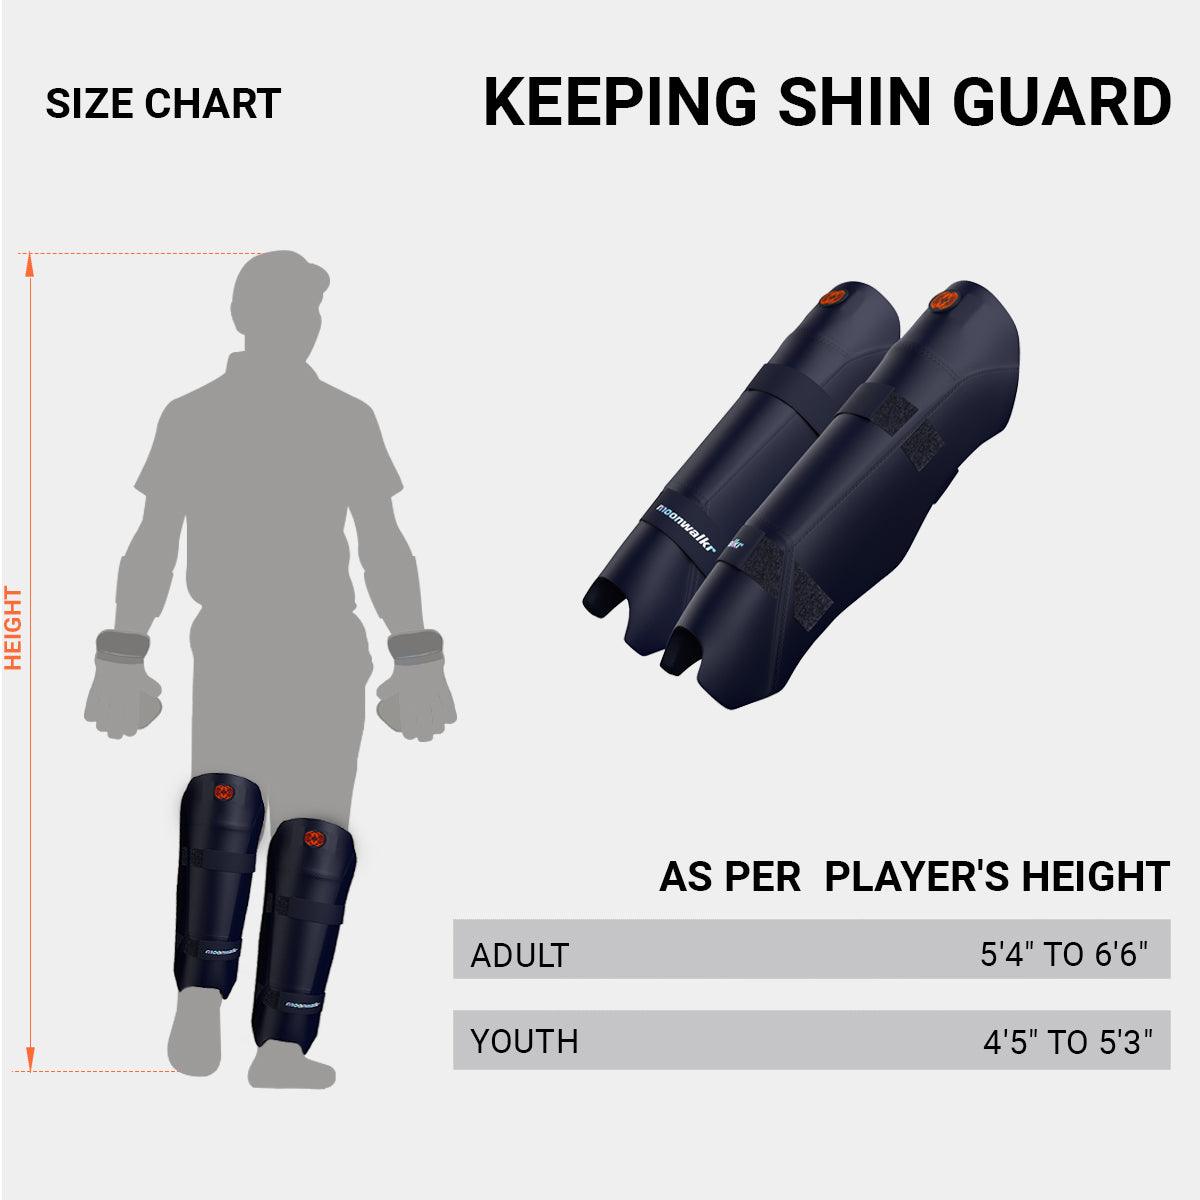 Keeping Shin Guard